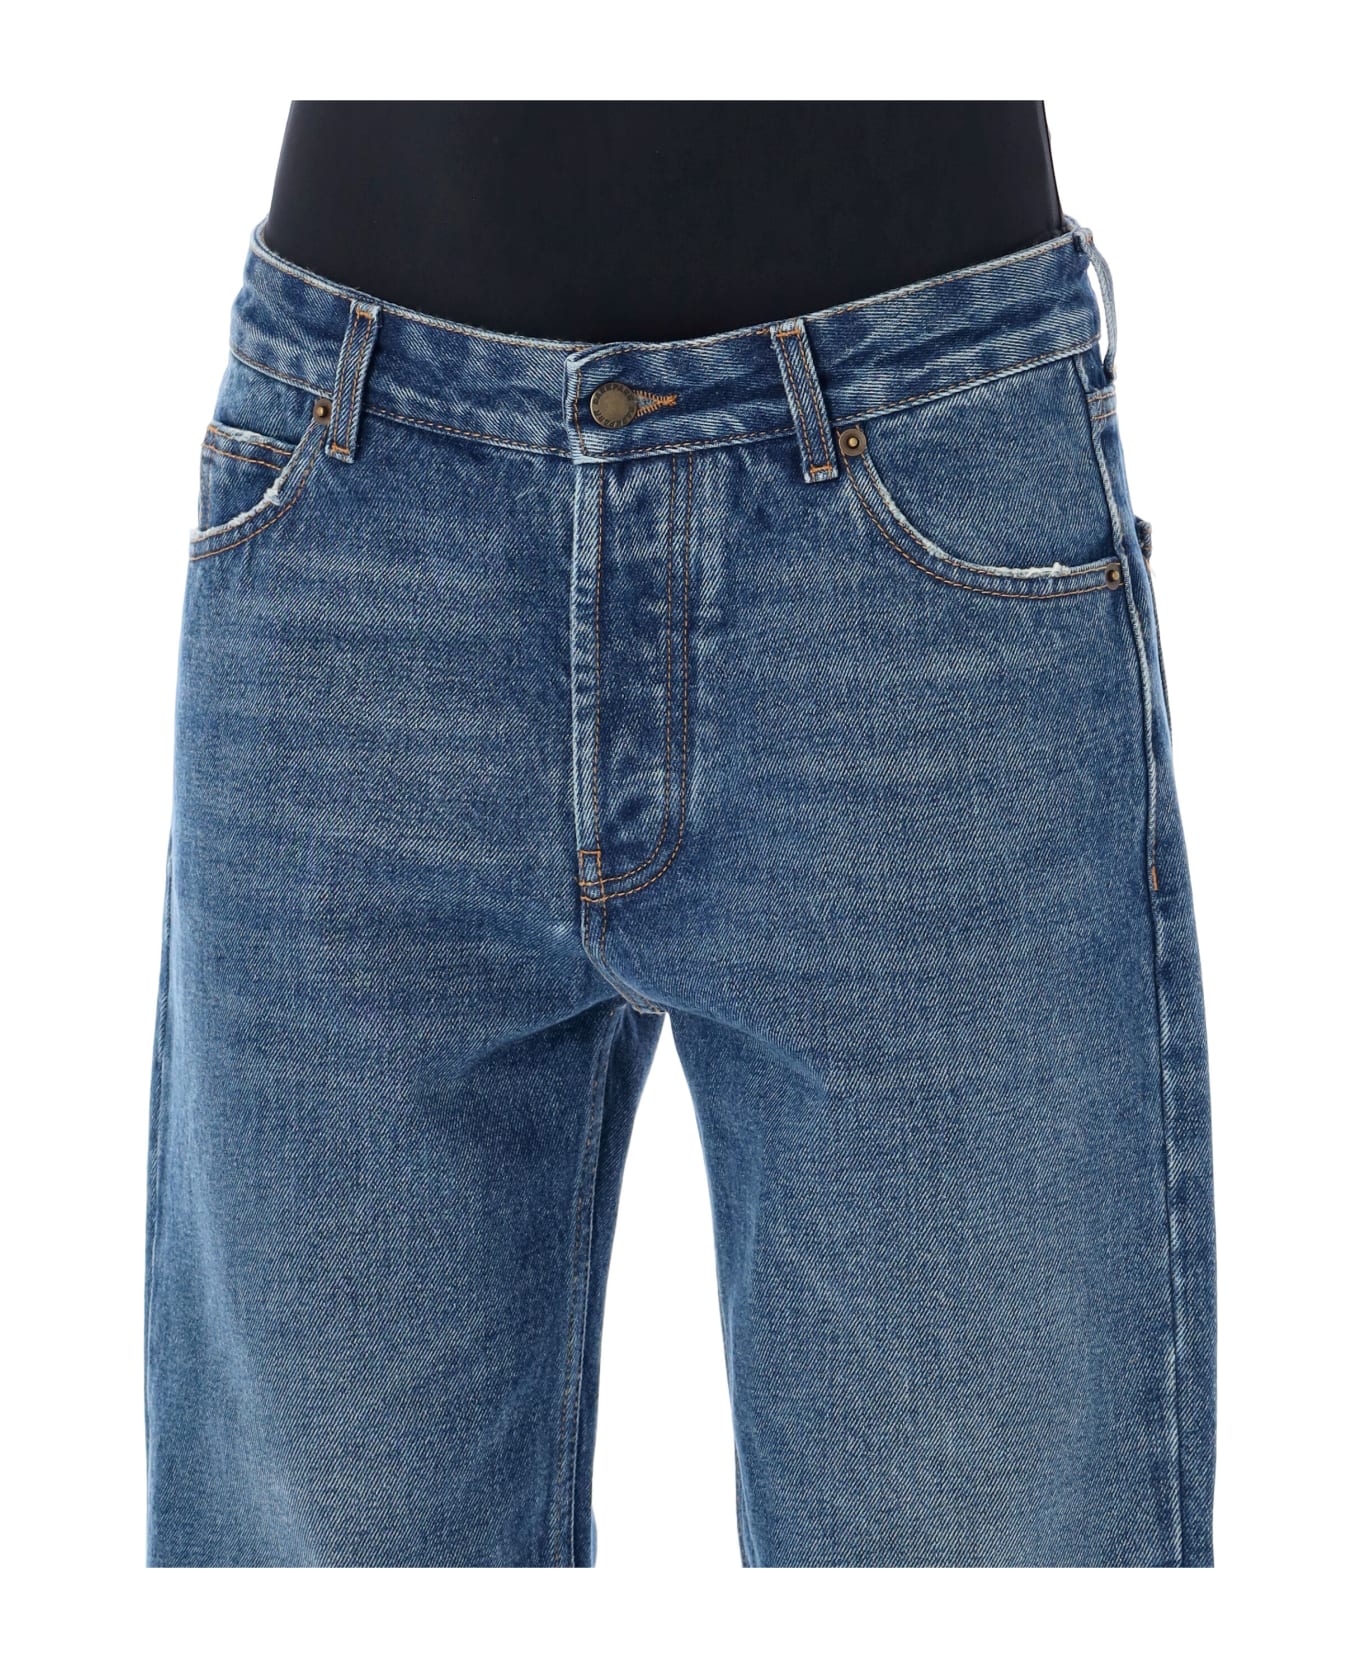 DARKPARK Liz Cropped Denim Jeans - MEDIUM WASH